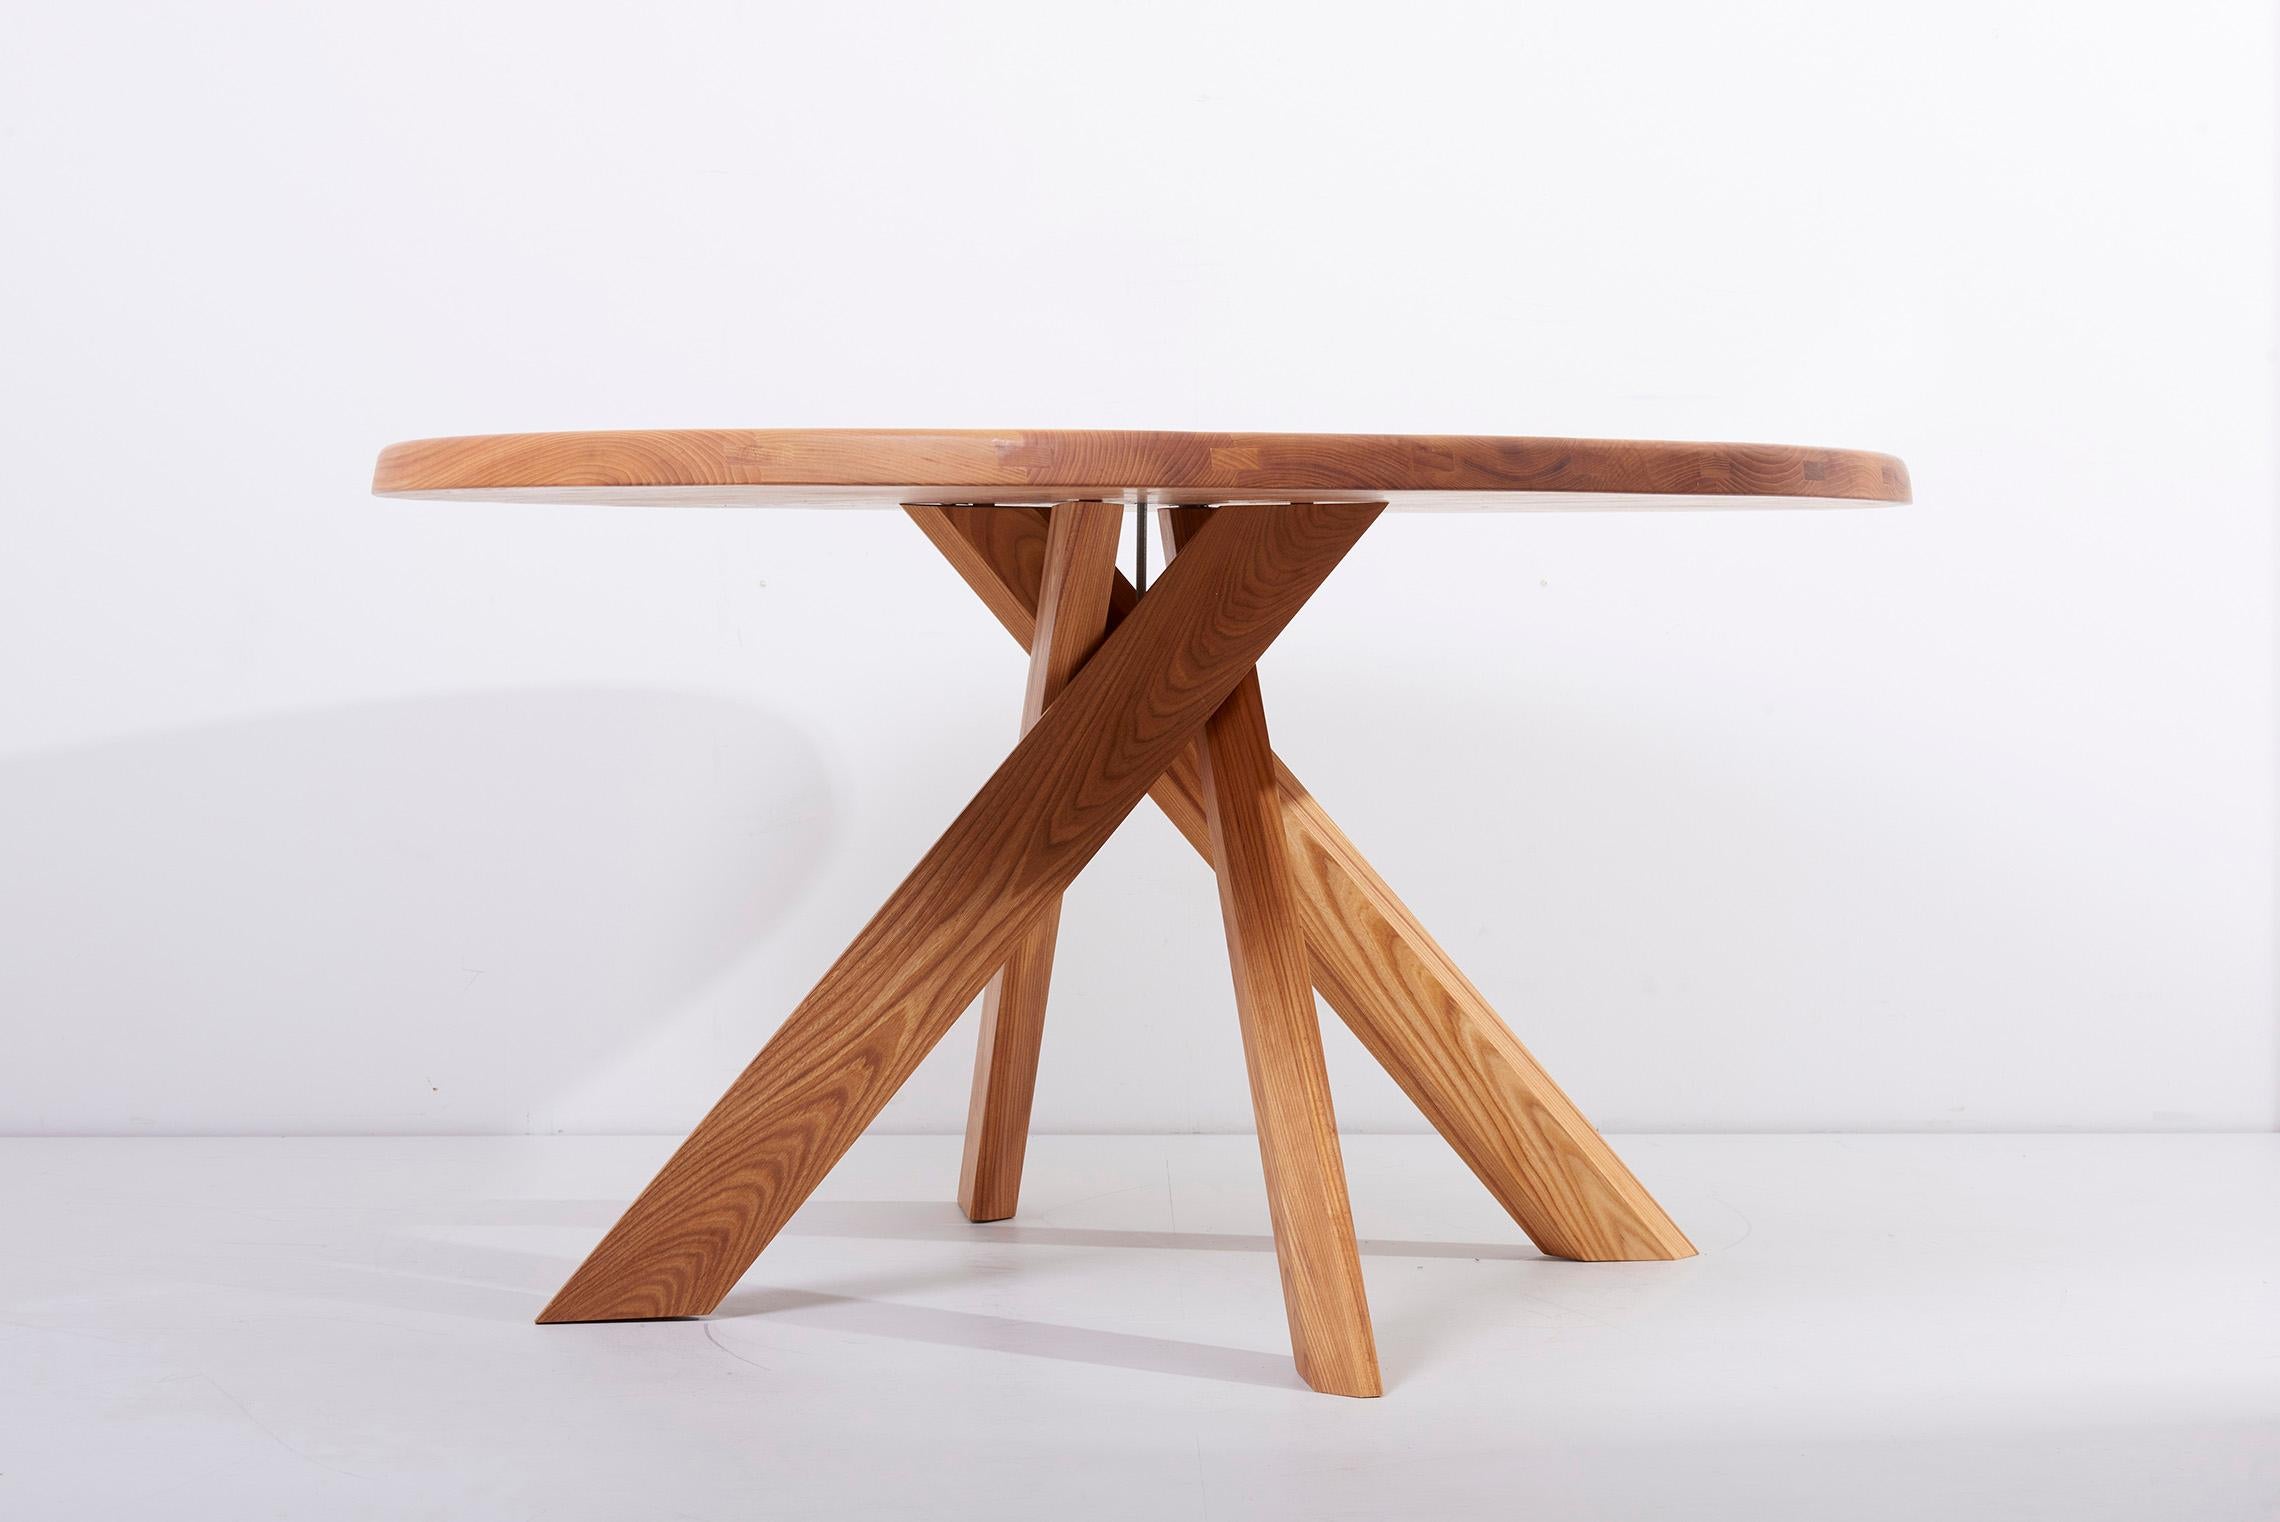 Table de salle à manger T21 : Un classique du début des années 70 conçu par Pierre Chapo. La table est fabriquée en orme (et disponible dès maintenant). Il peut également être commandé en chêne ainsi qu'en trois tailles différentes (veuillez nous